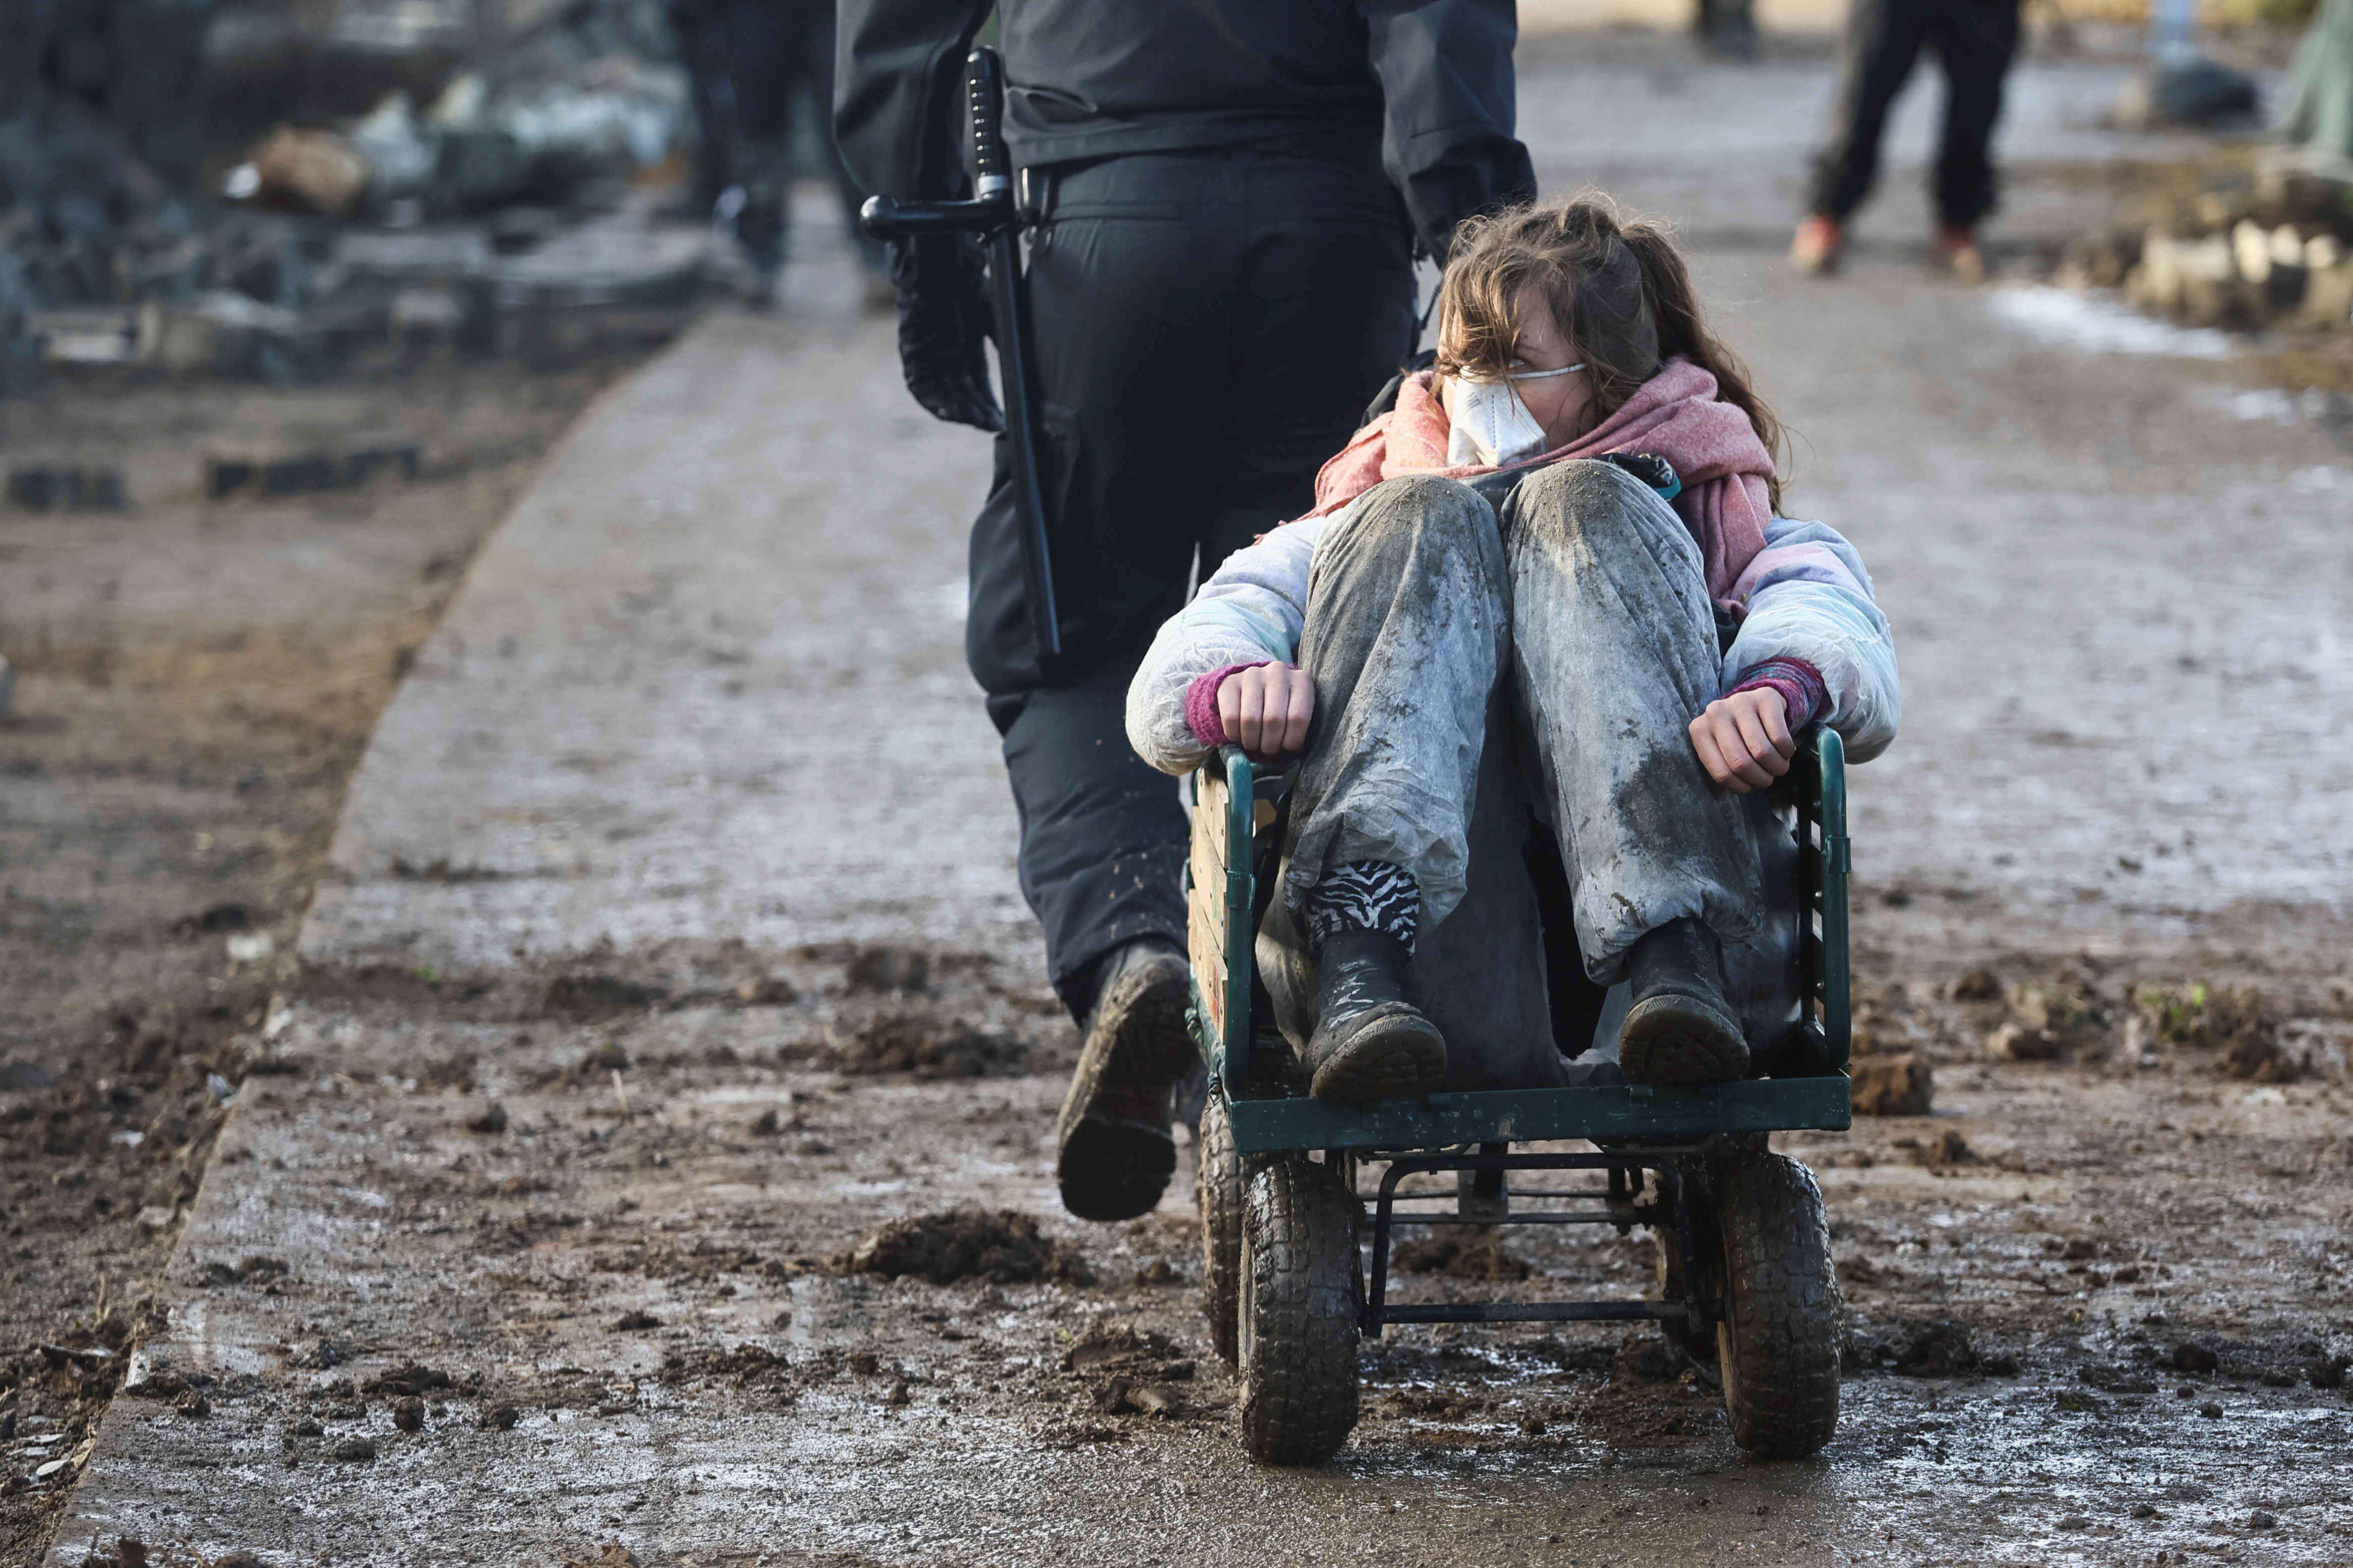 Una activista es retirada del lugar en un carrito (REUTERS/Wolfgang Rattay)